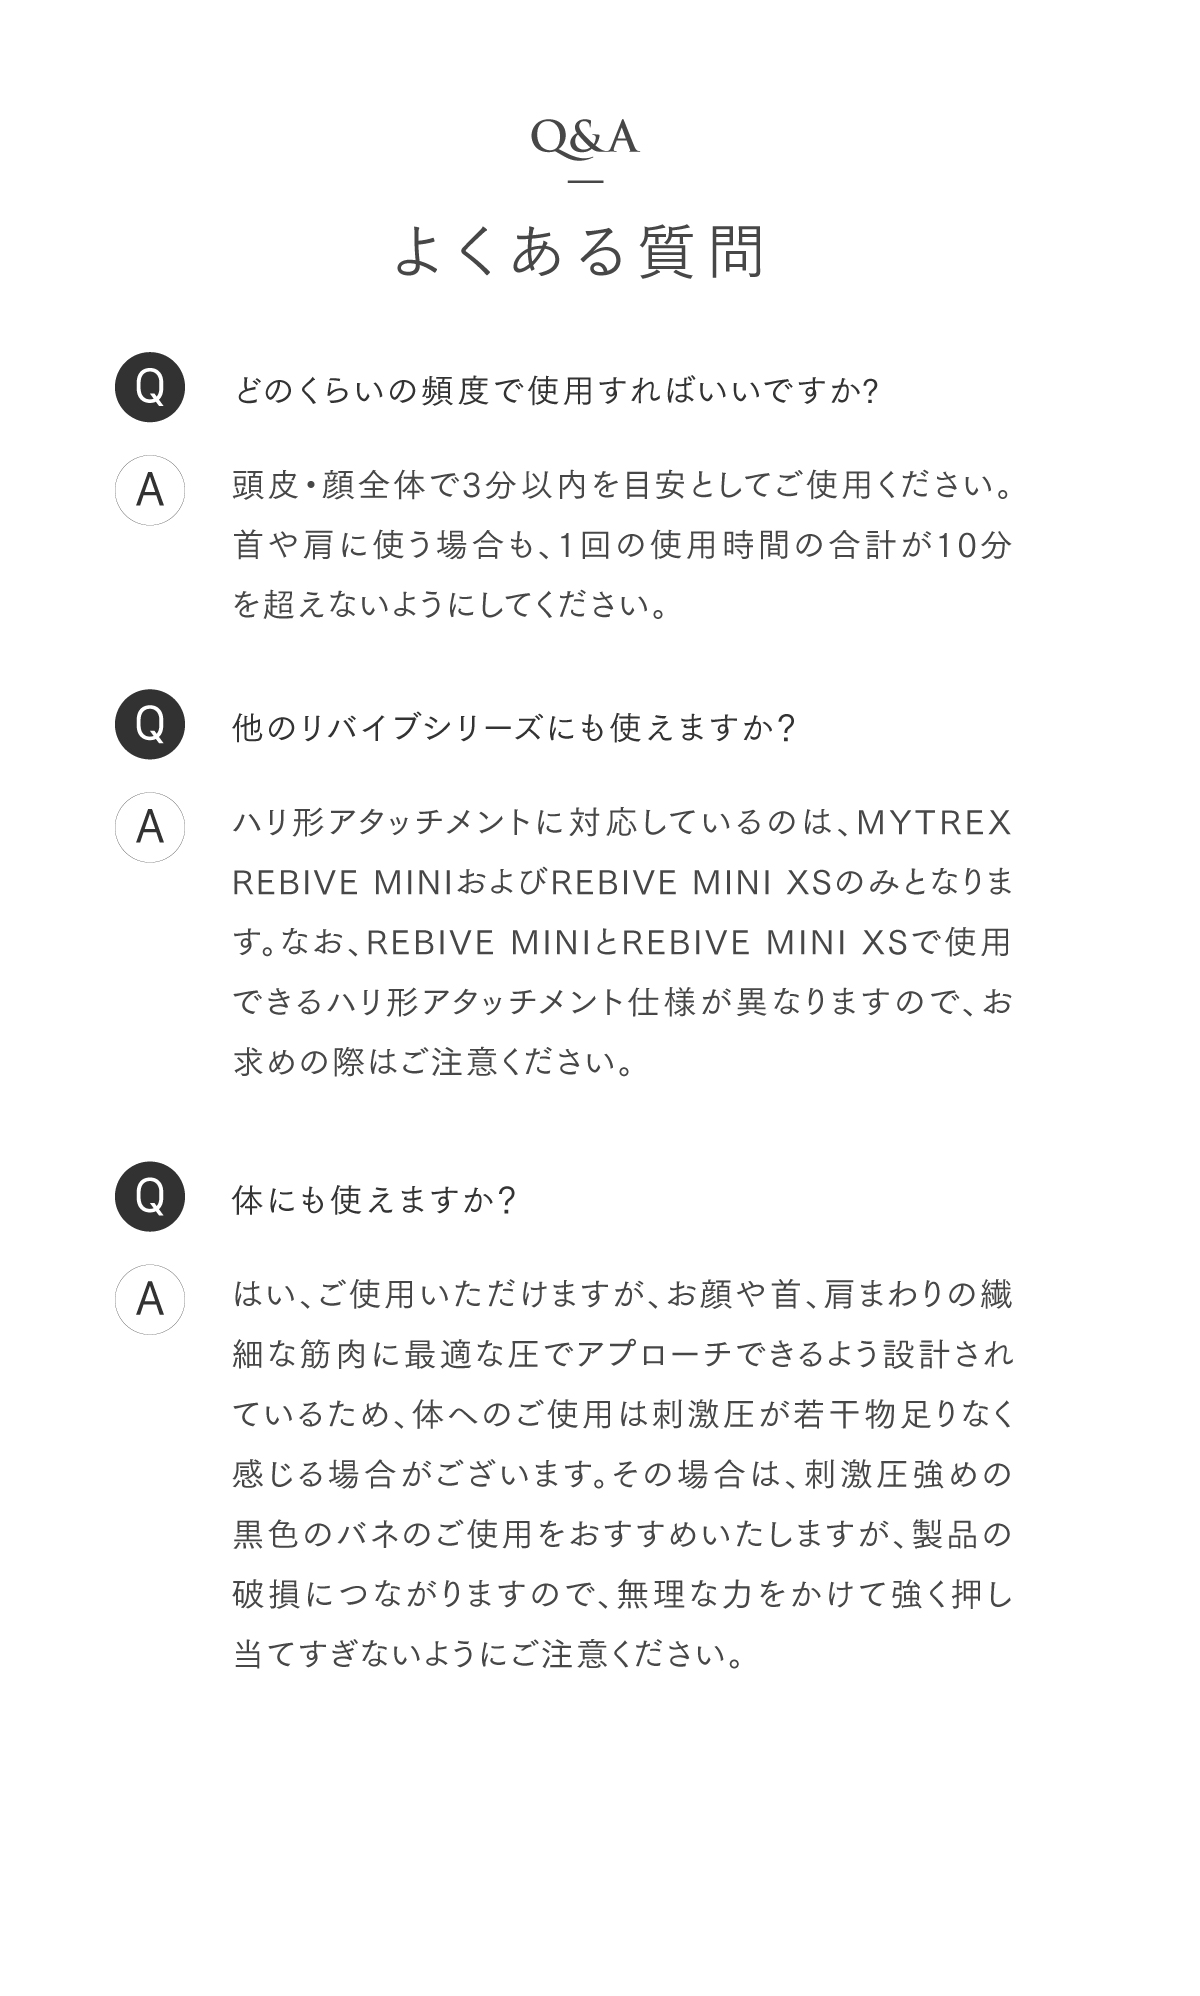 MYTREX REBIVE MINI 専用 ハリ形アタッチメント ハリ型アタッチメント